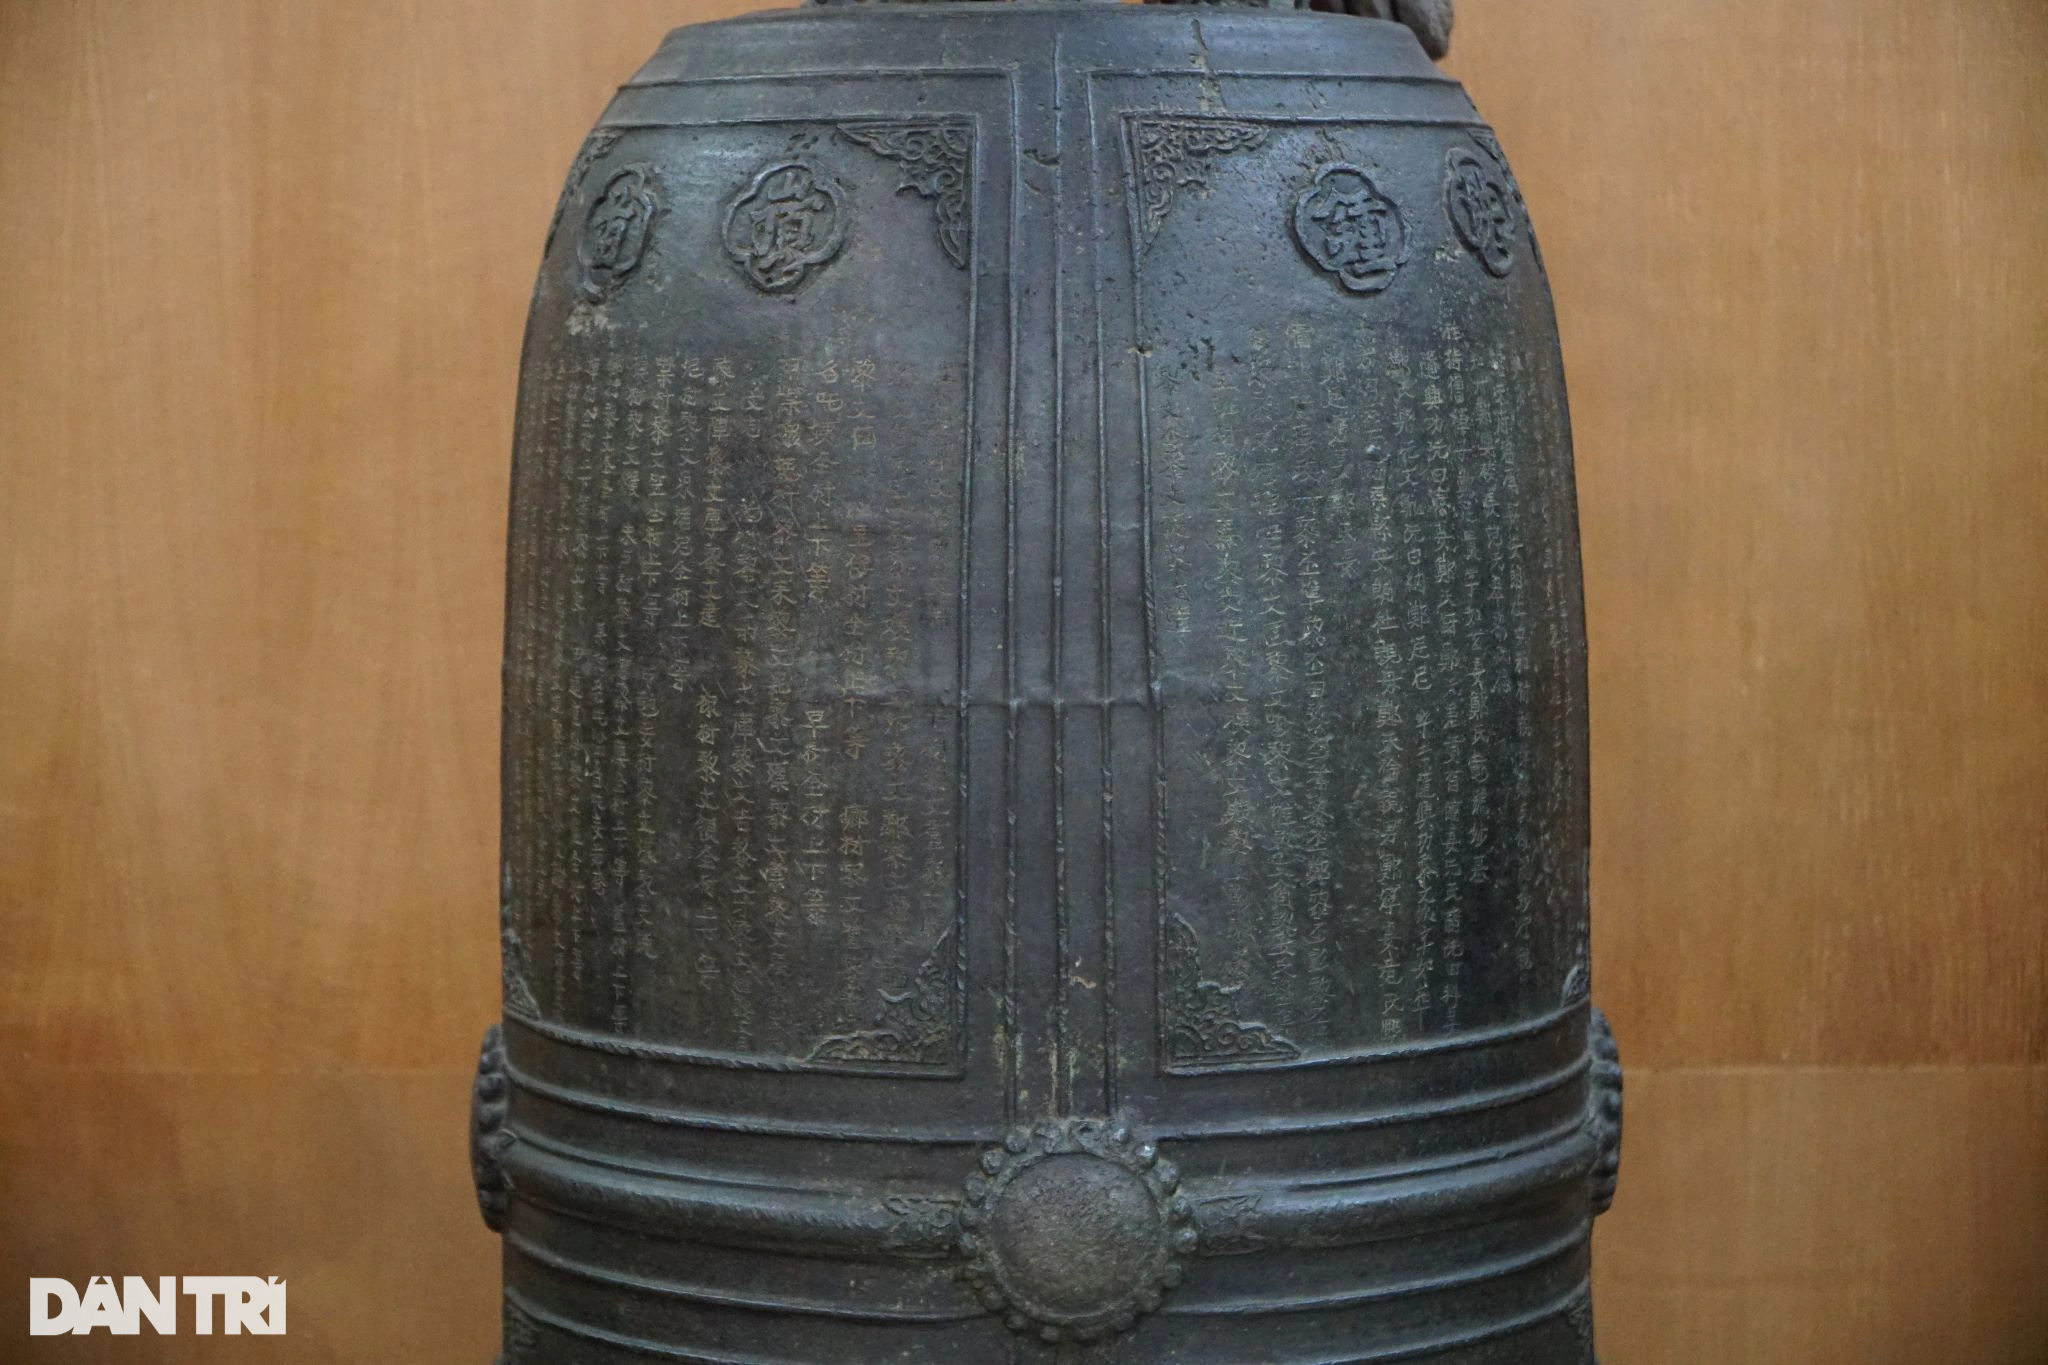 Chiếc chuông cổ hơn 300 năm tuổi được đúc từ thời vua Lê - 3